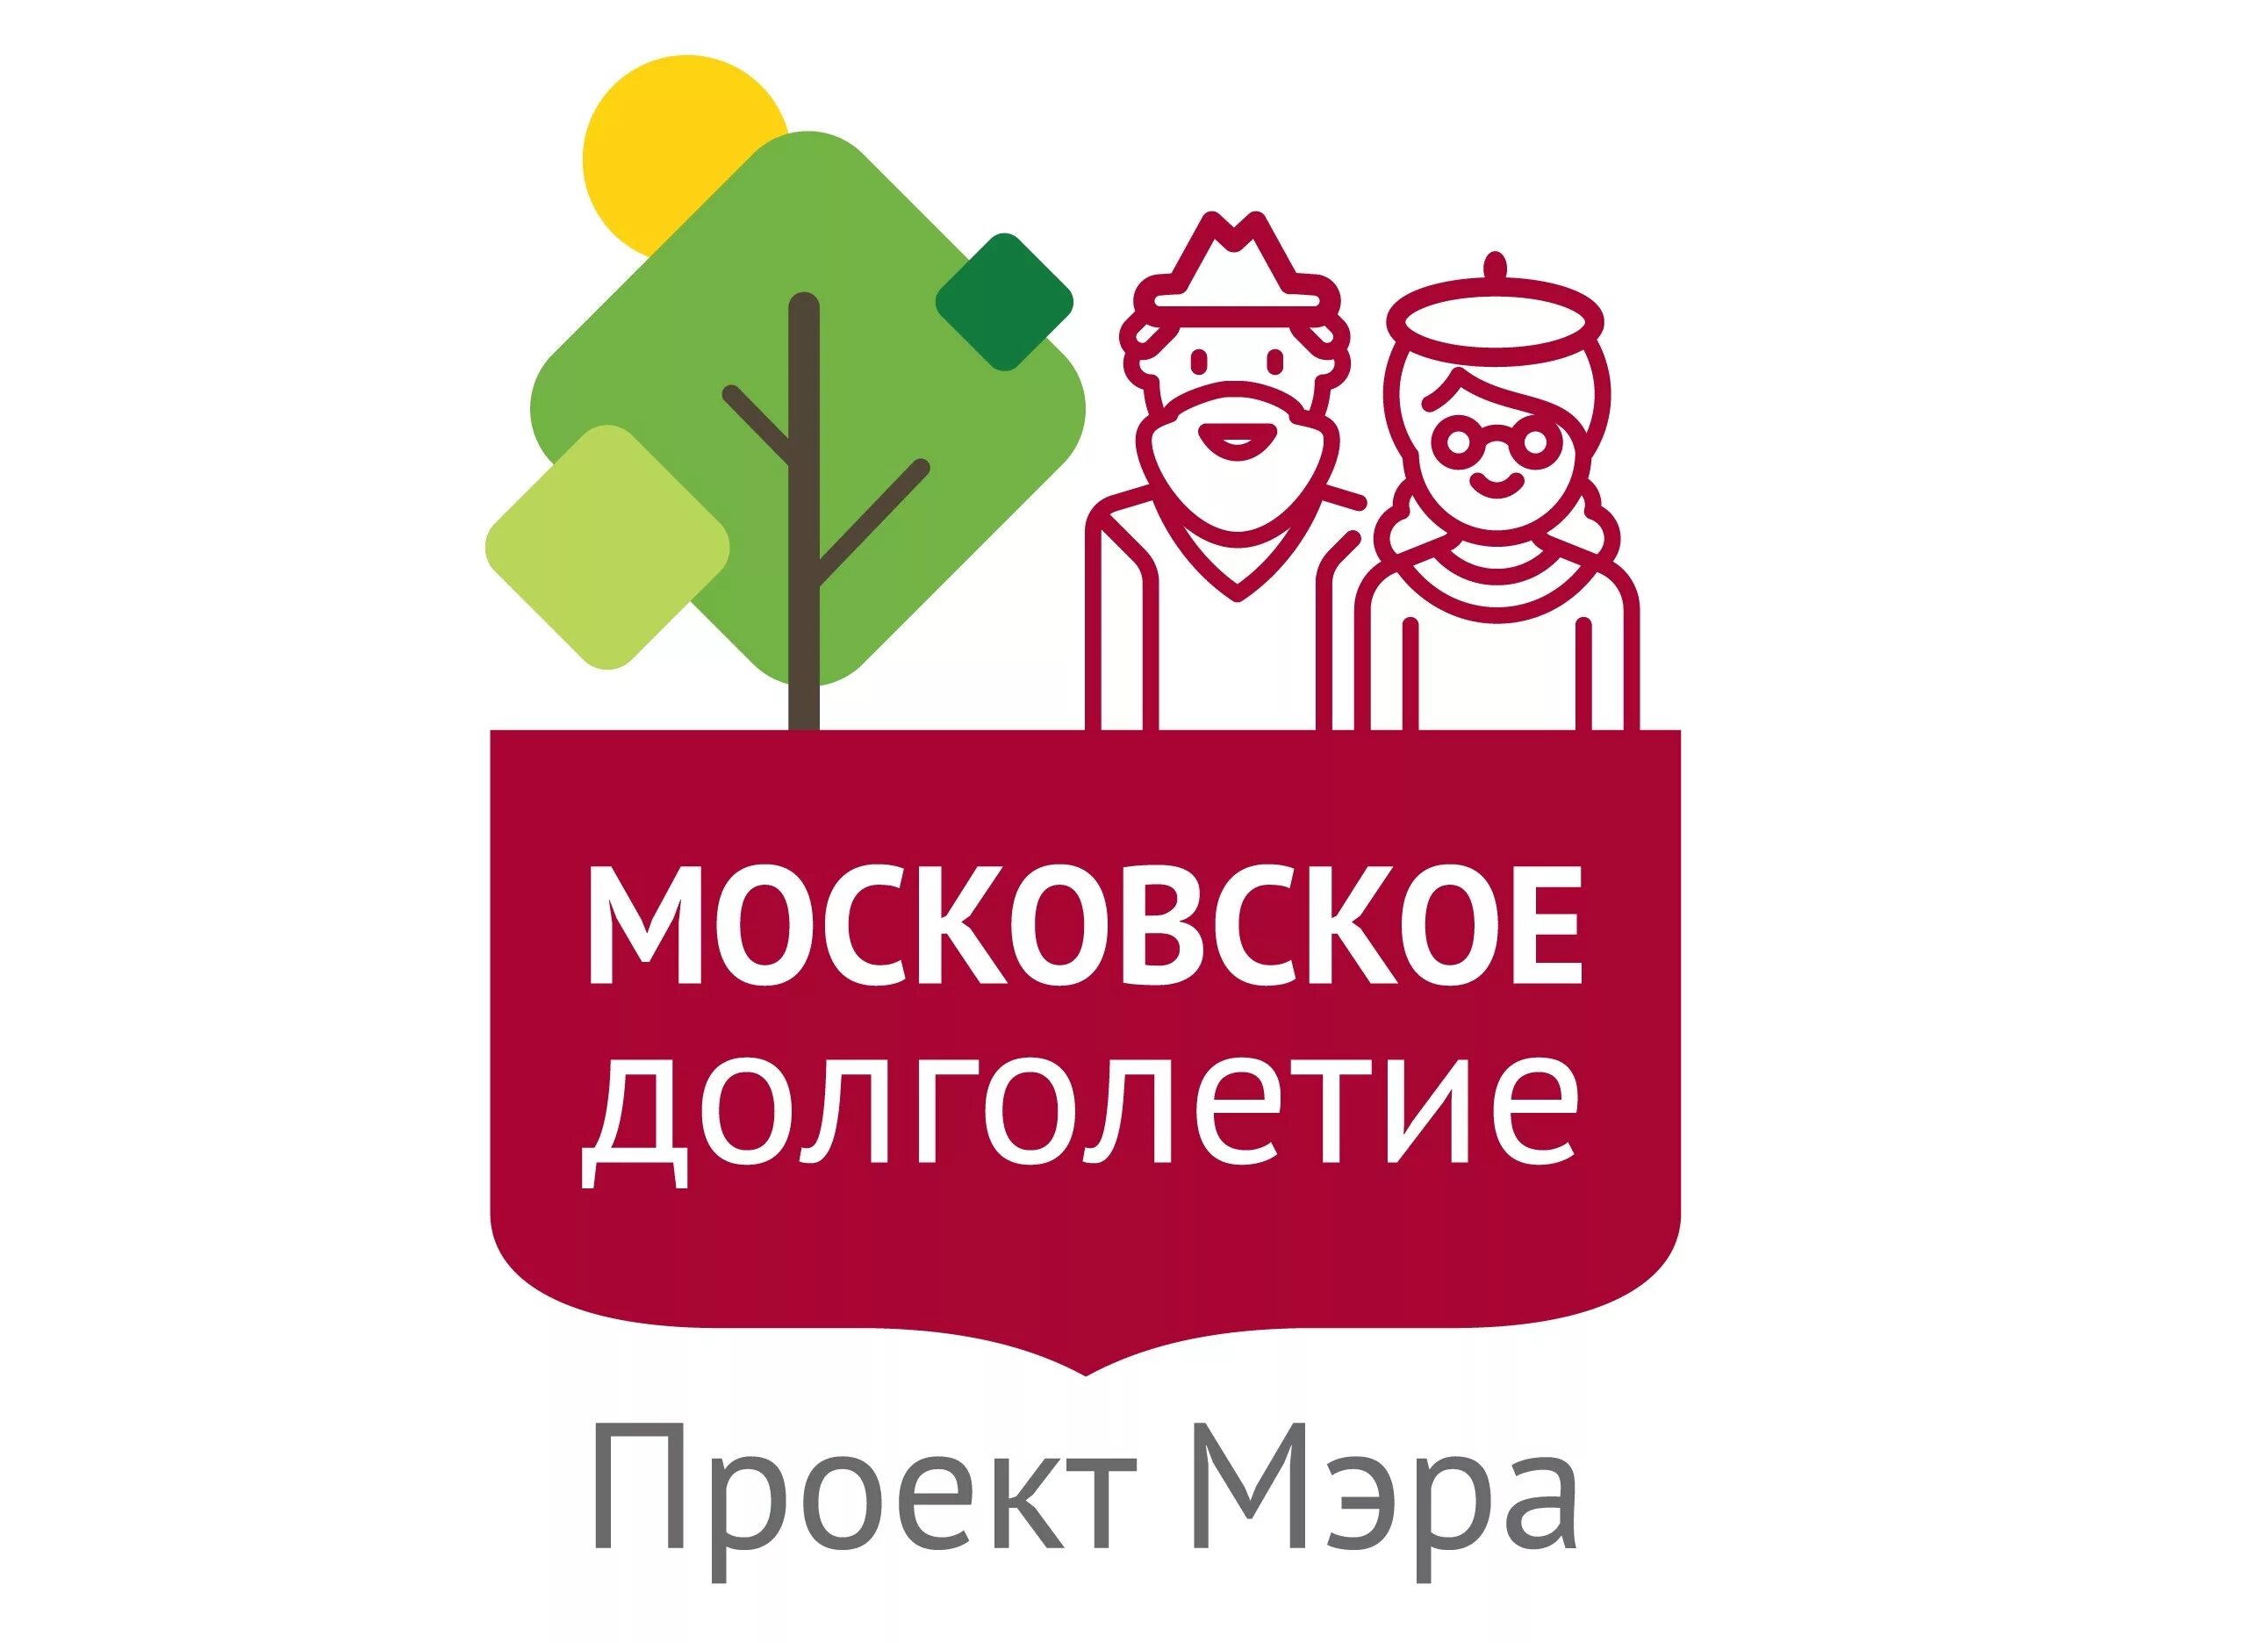 Приложение долголетие. Проект мэра Москвы Московское долголетие. Проект Московское долголетие логотип. Активное долголетие Московское.